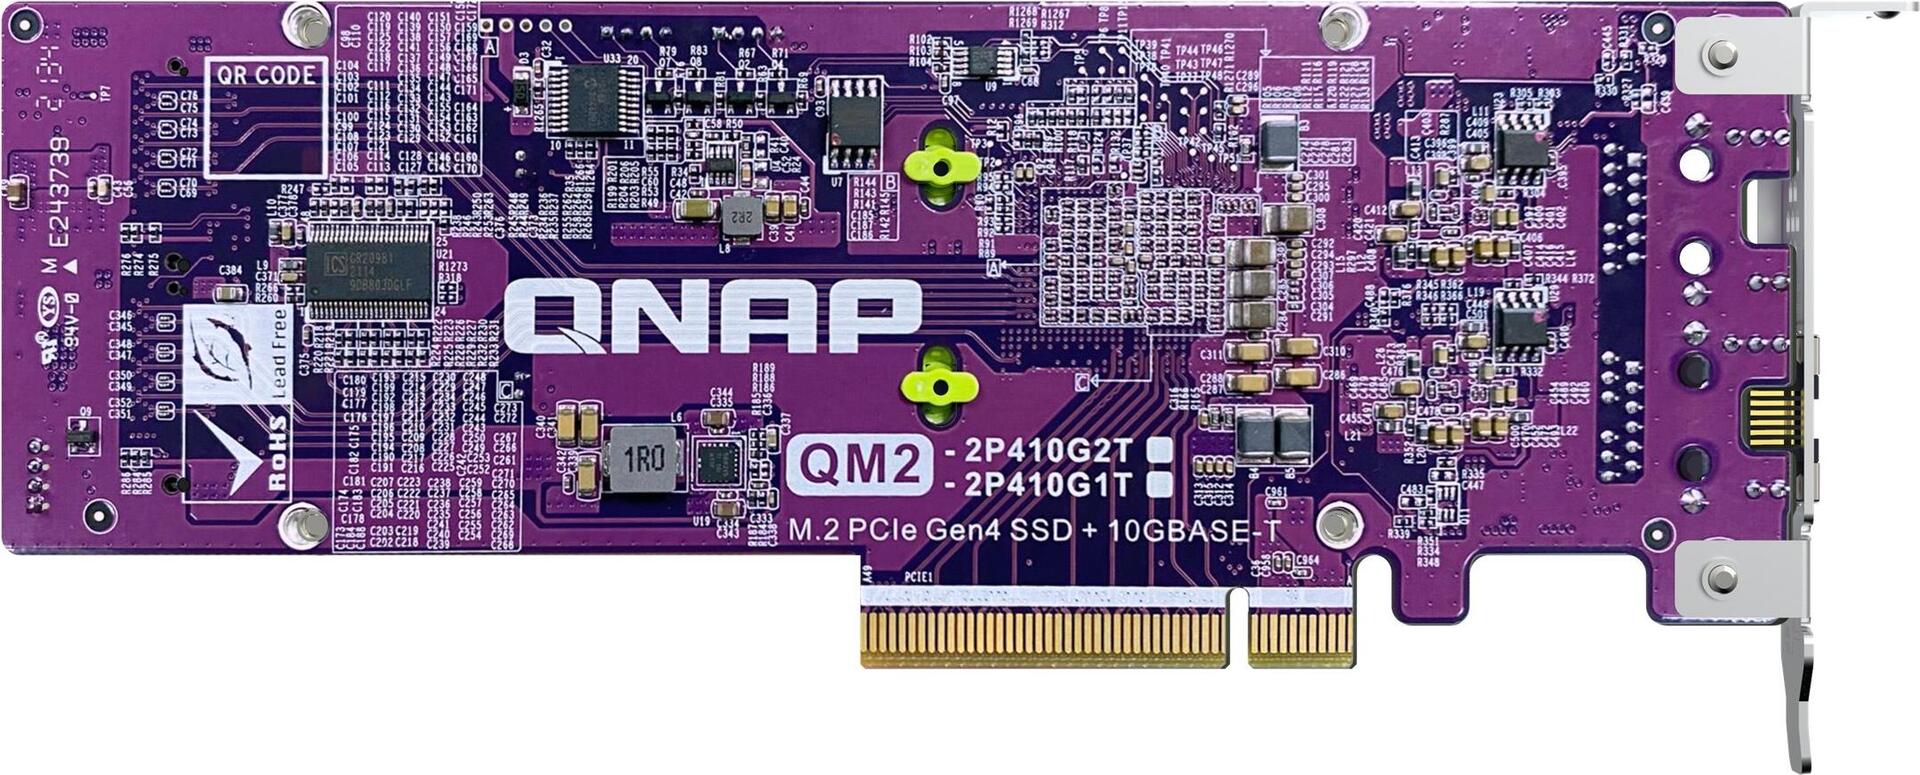 QNAP QM2-2P410G1T Speicher-Controller mit 10GBASE-T Port (QM2-2P410G1T)